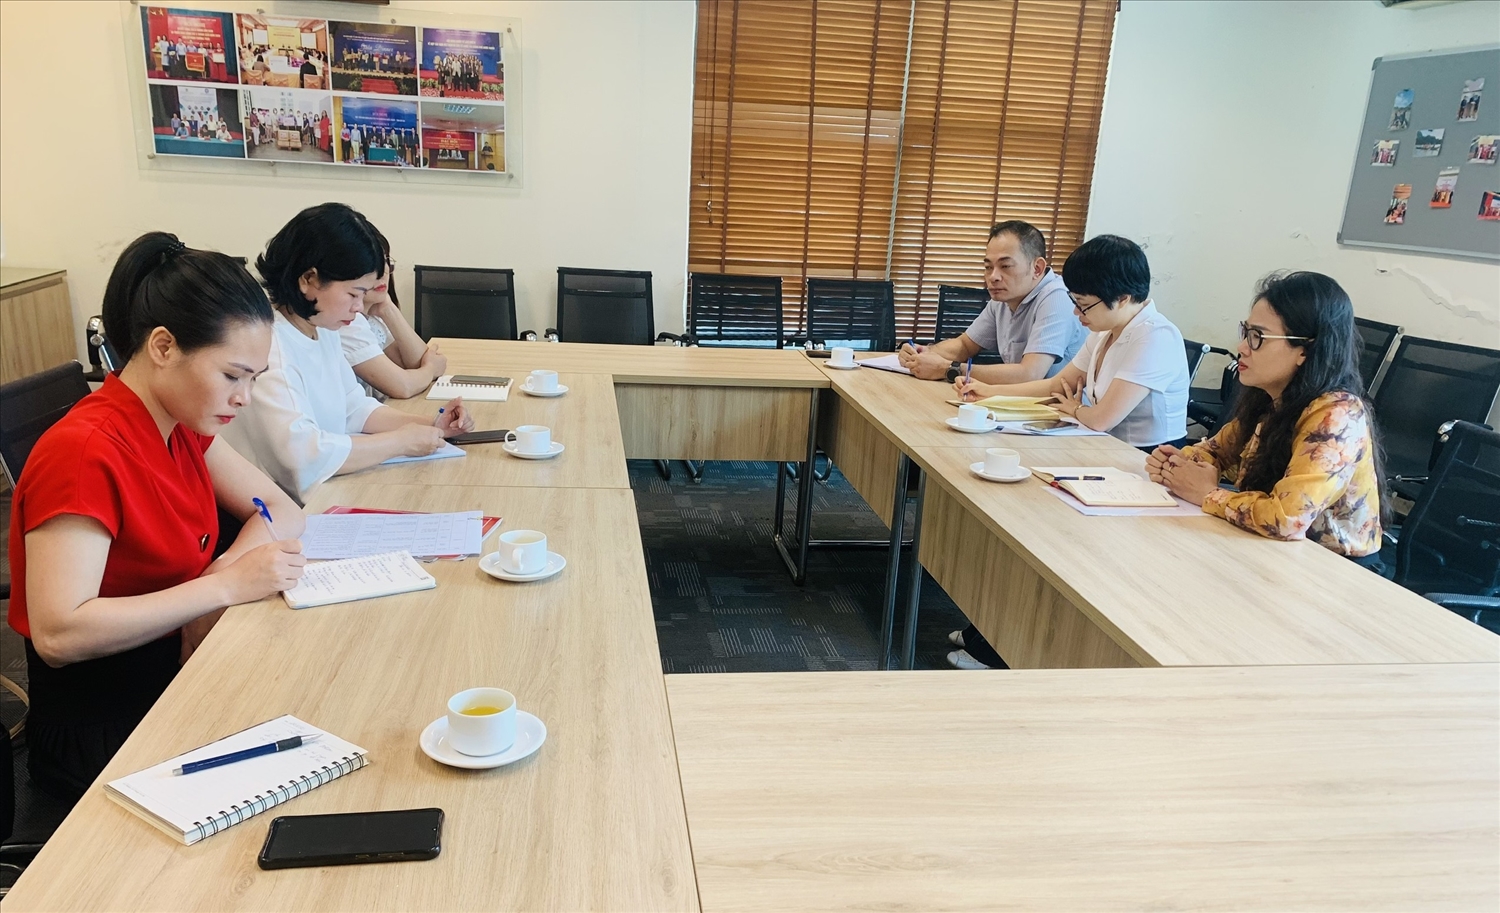 Đoàn công tác Sở Ngoại vụ tỉnh Lai Châu làm việc với Ban Điều phối viện trợ Nhân dân (PACCOM) ngày 23/6/2023 nhằm tích cực vận động nguồn viện trợ không hoàn lại từ các tổ chức PCPNN hỗ trợ cho các lĩnh vực còn khó khăn của tỉnh. (Nguồn ảnh: songoaivulaichau.gov.vn)